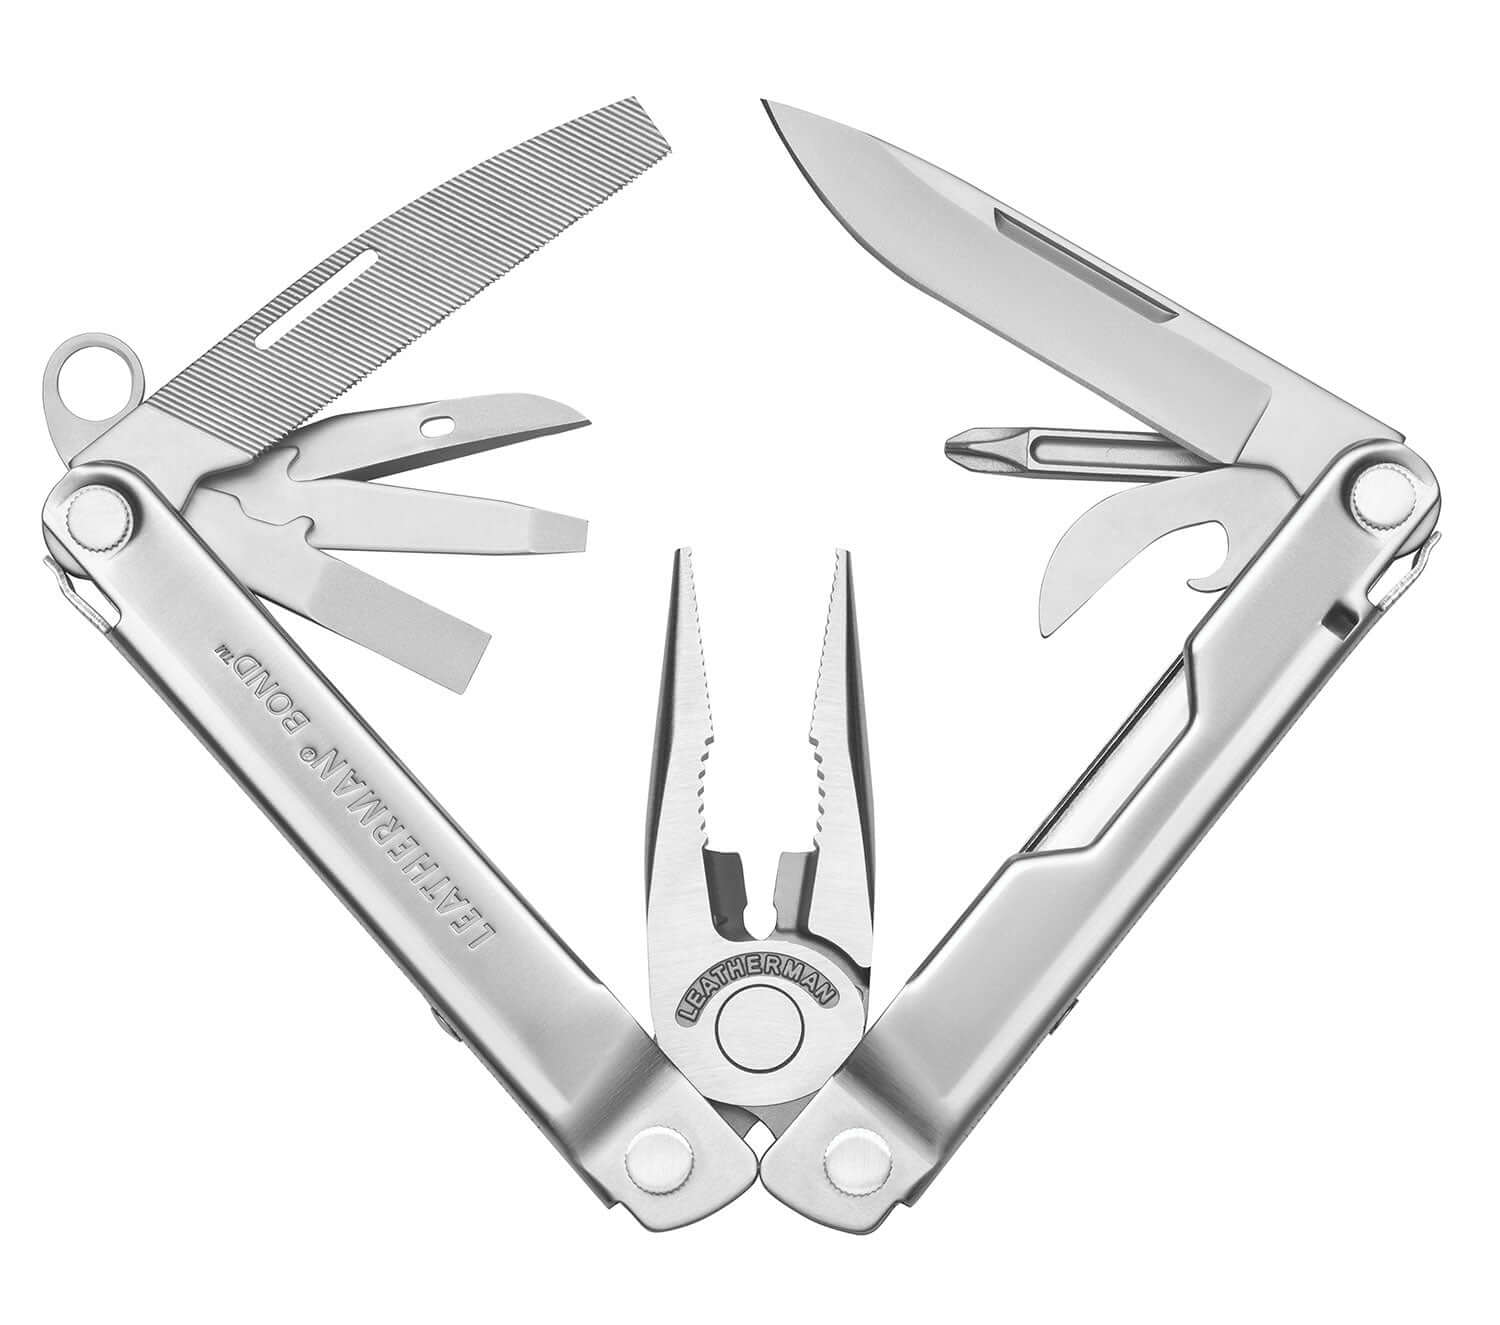 Leatherman Bond™ EDC Multi-Tool 14 tools